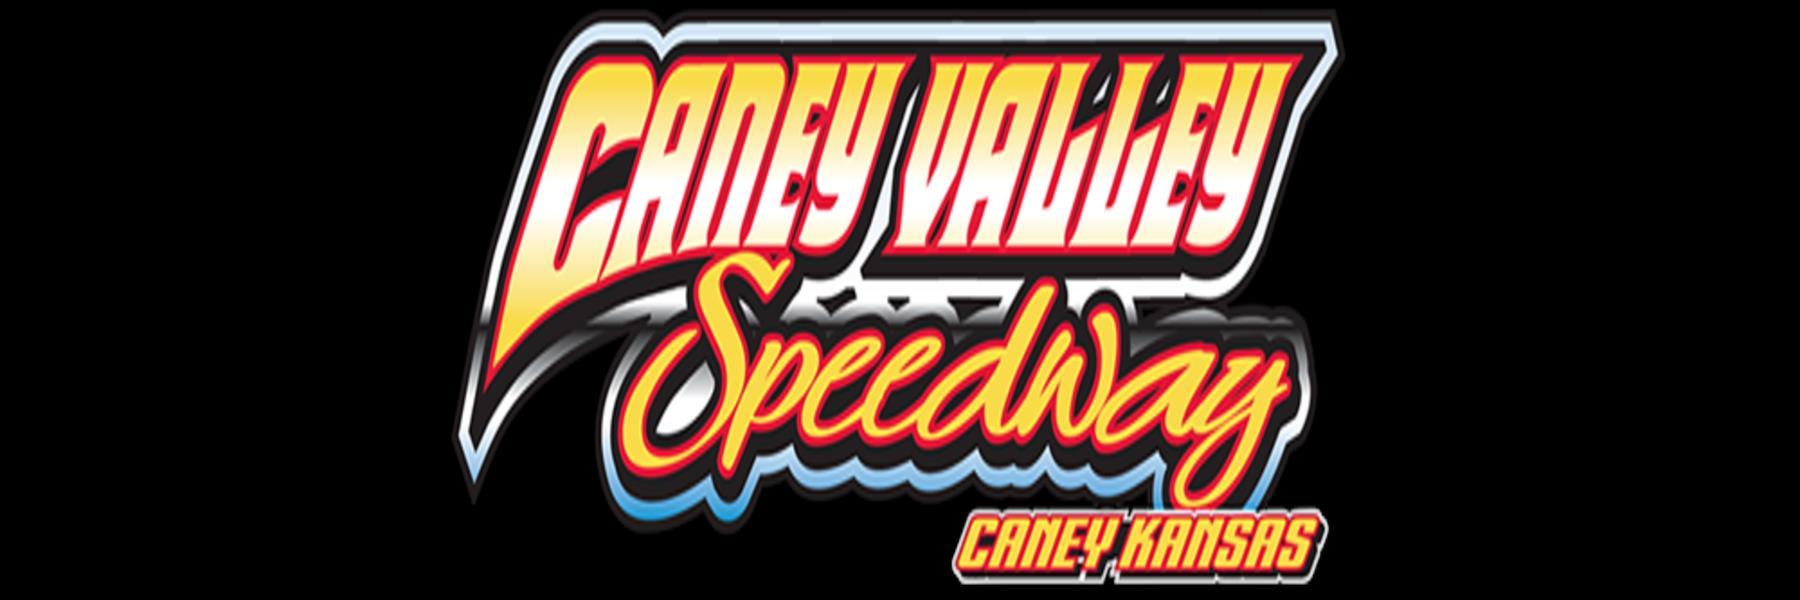 10/8/2022 - Caney Valley Speedway